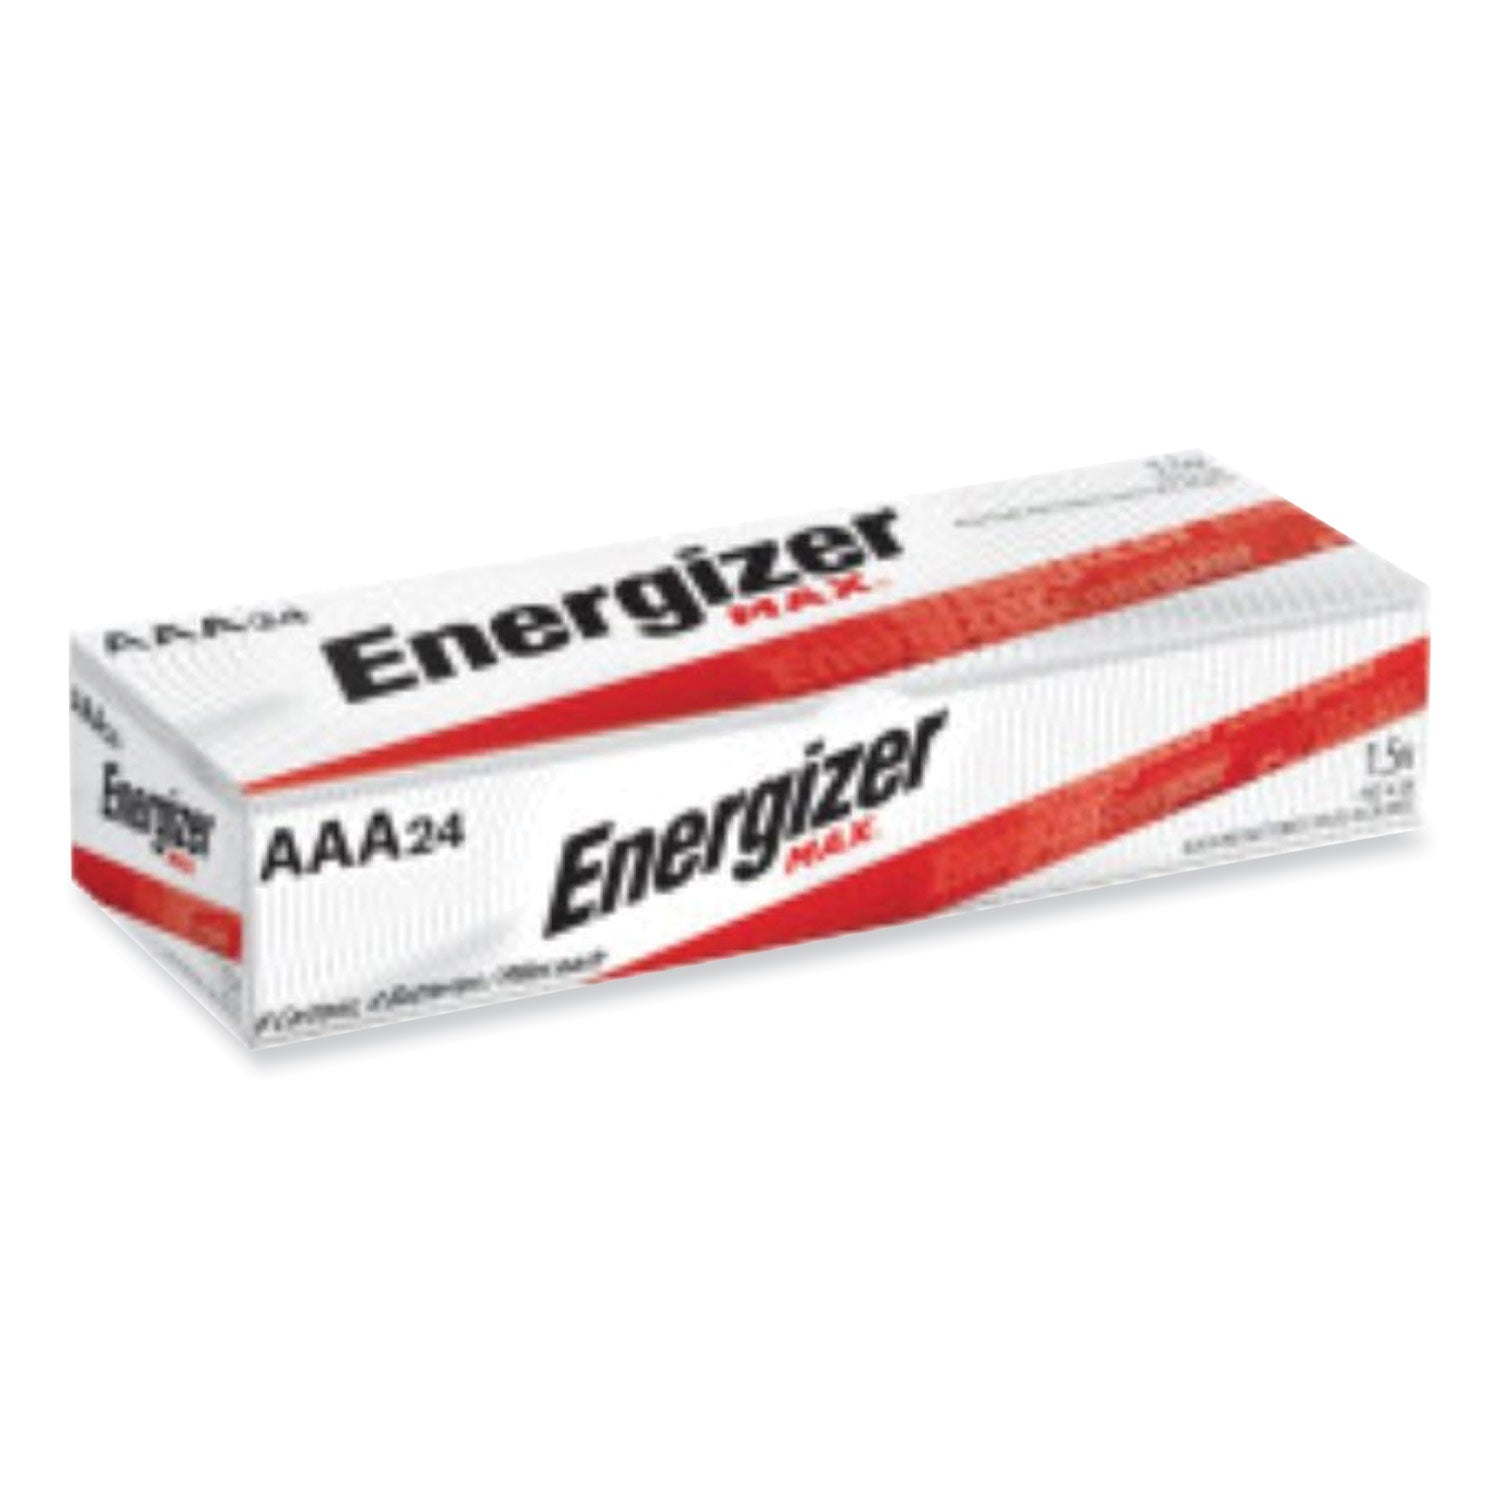 max-aaa-alkaline-batteries-15-v-4-pack-6-packs-box_evee92bx - 1